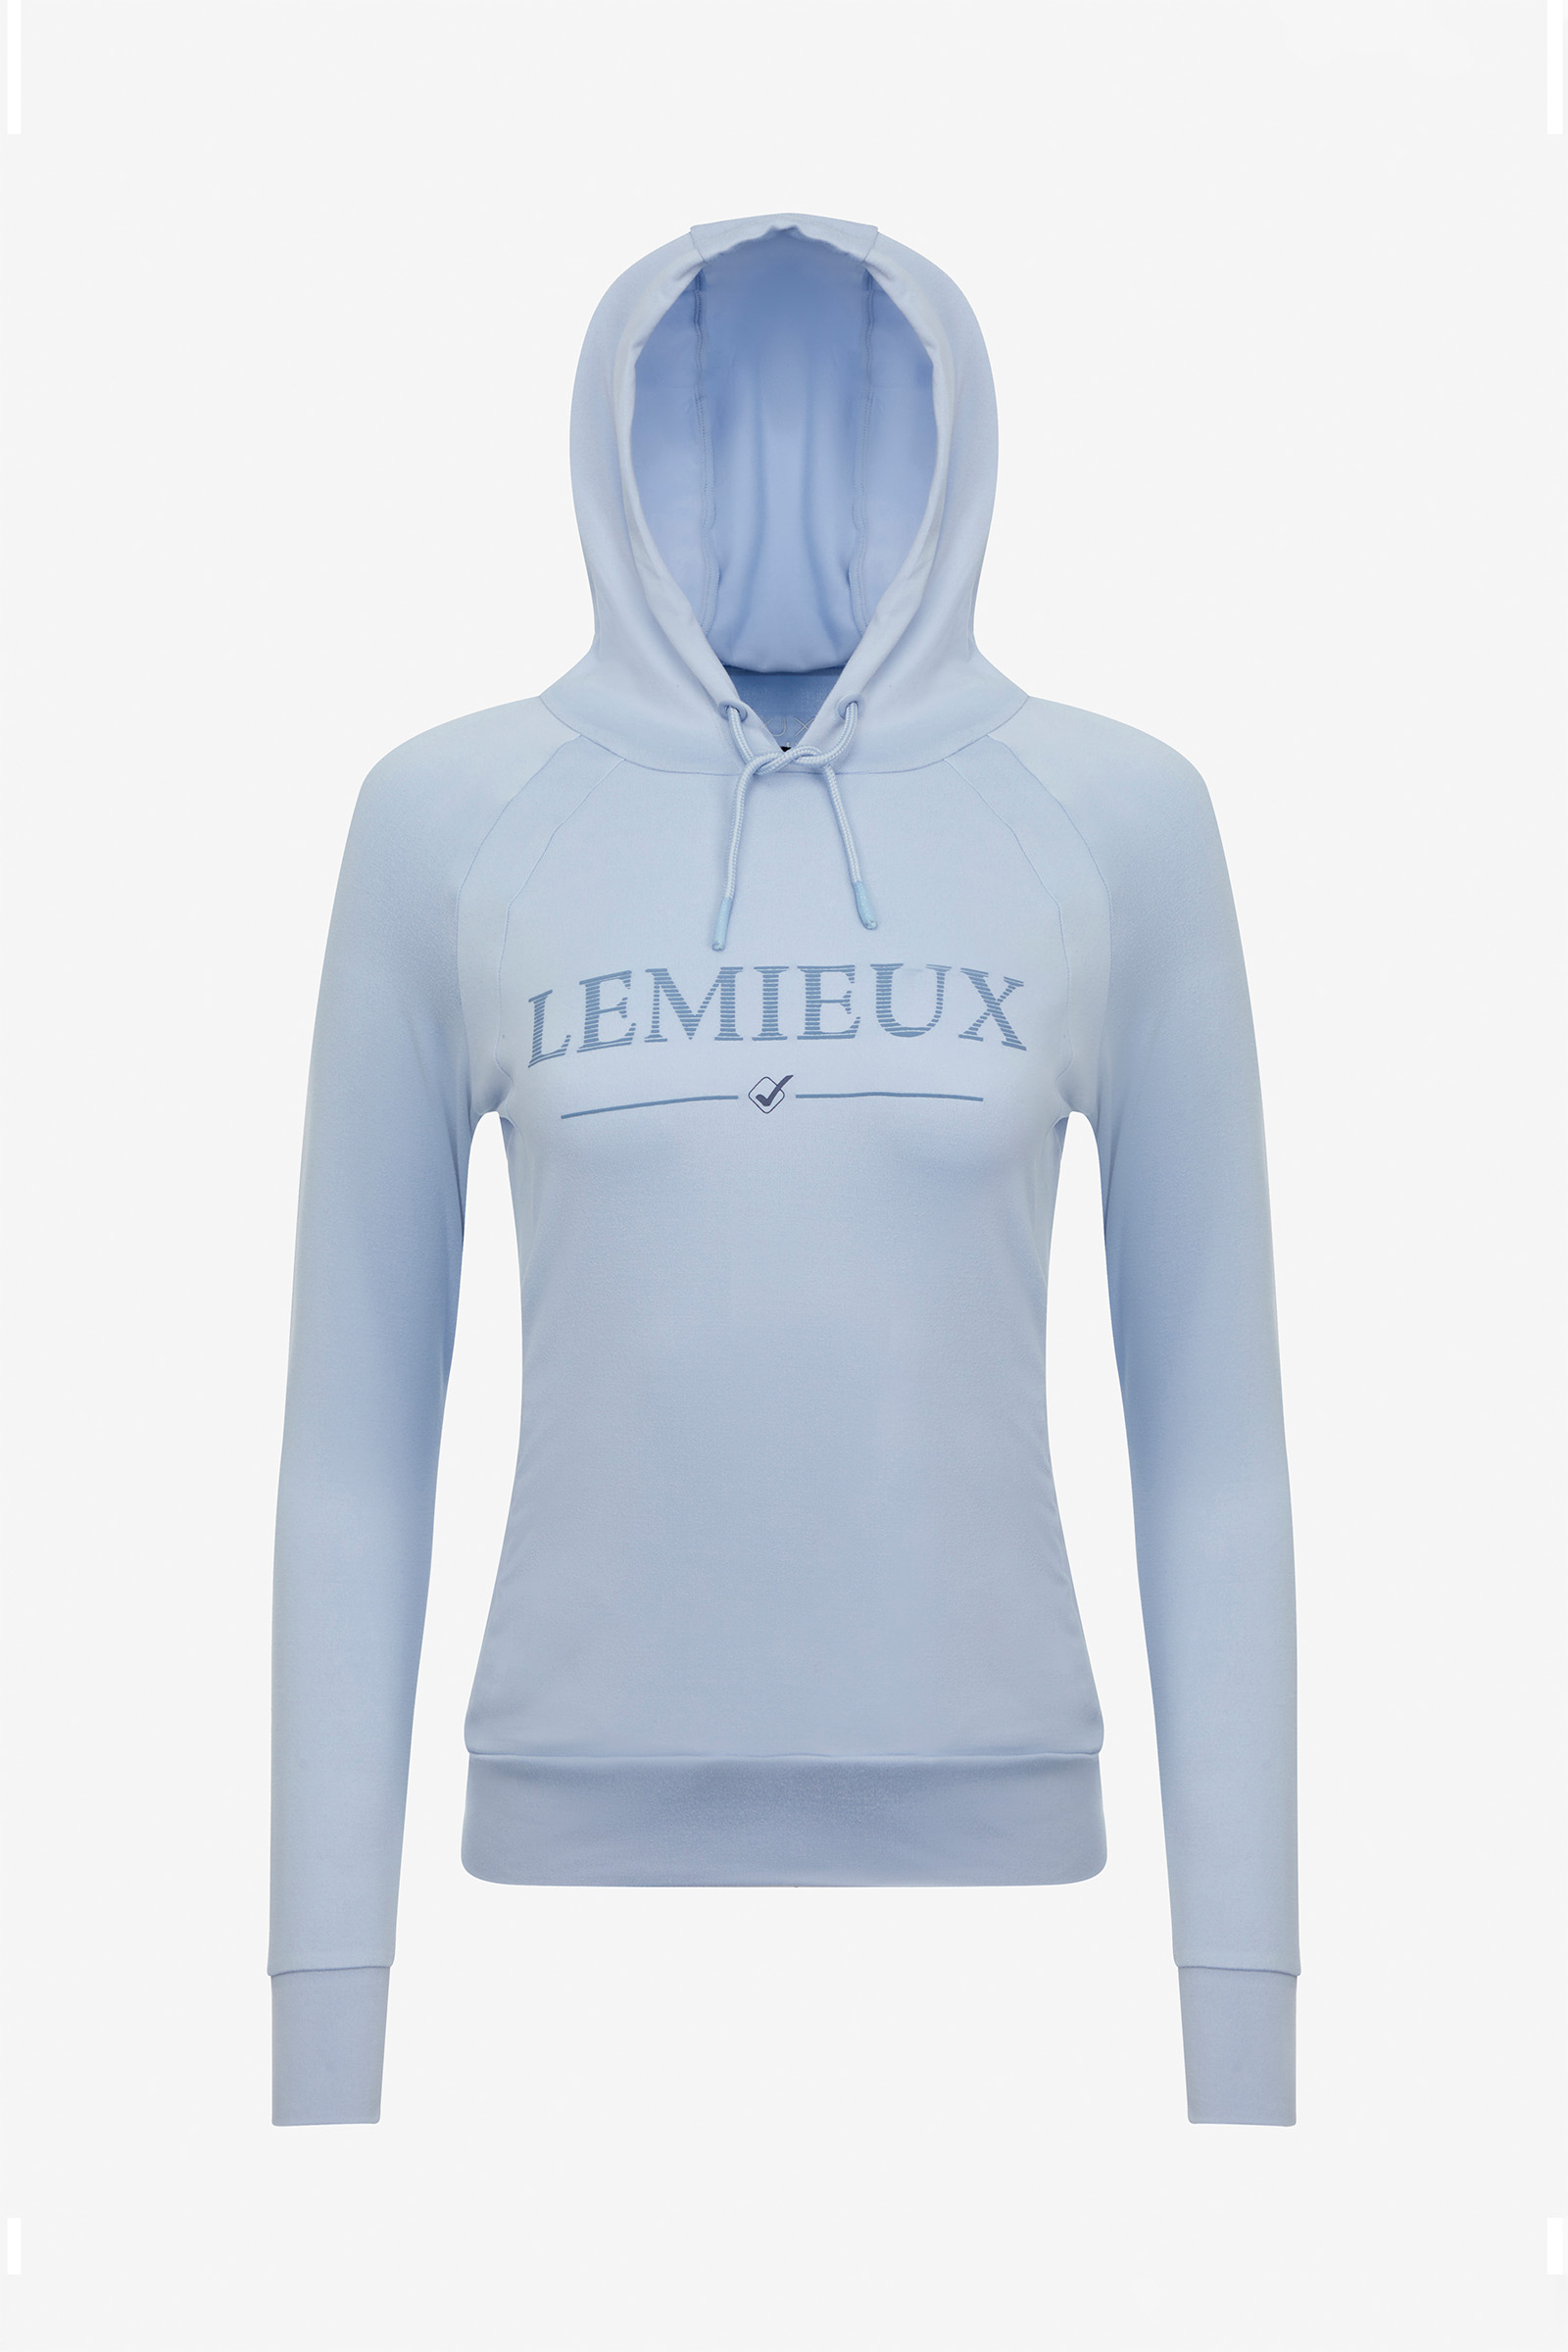 hoodies luxe